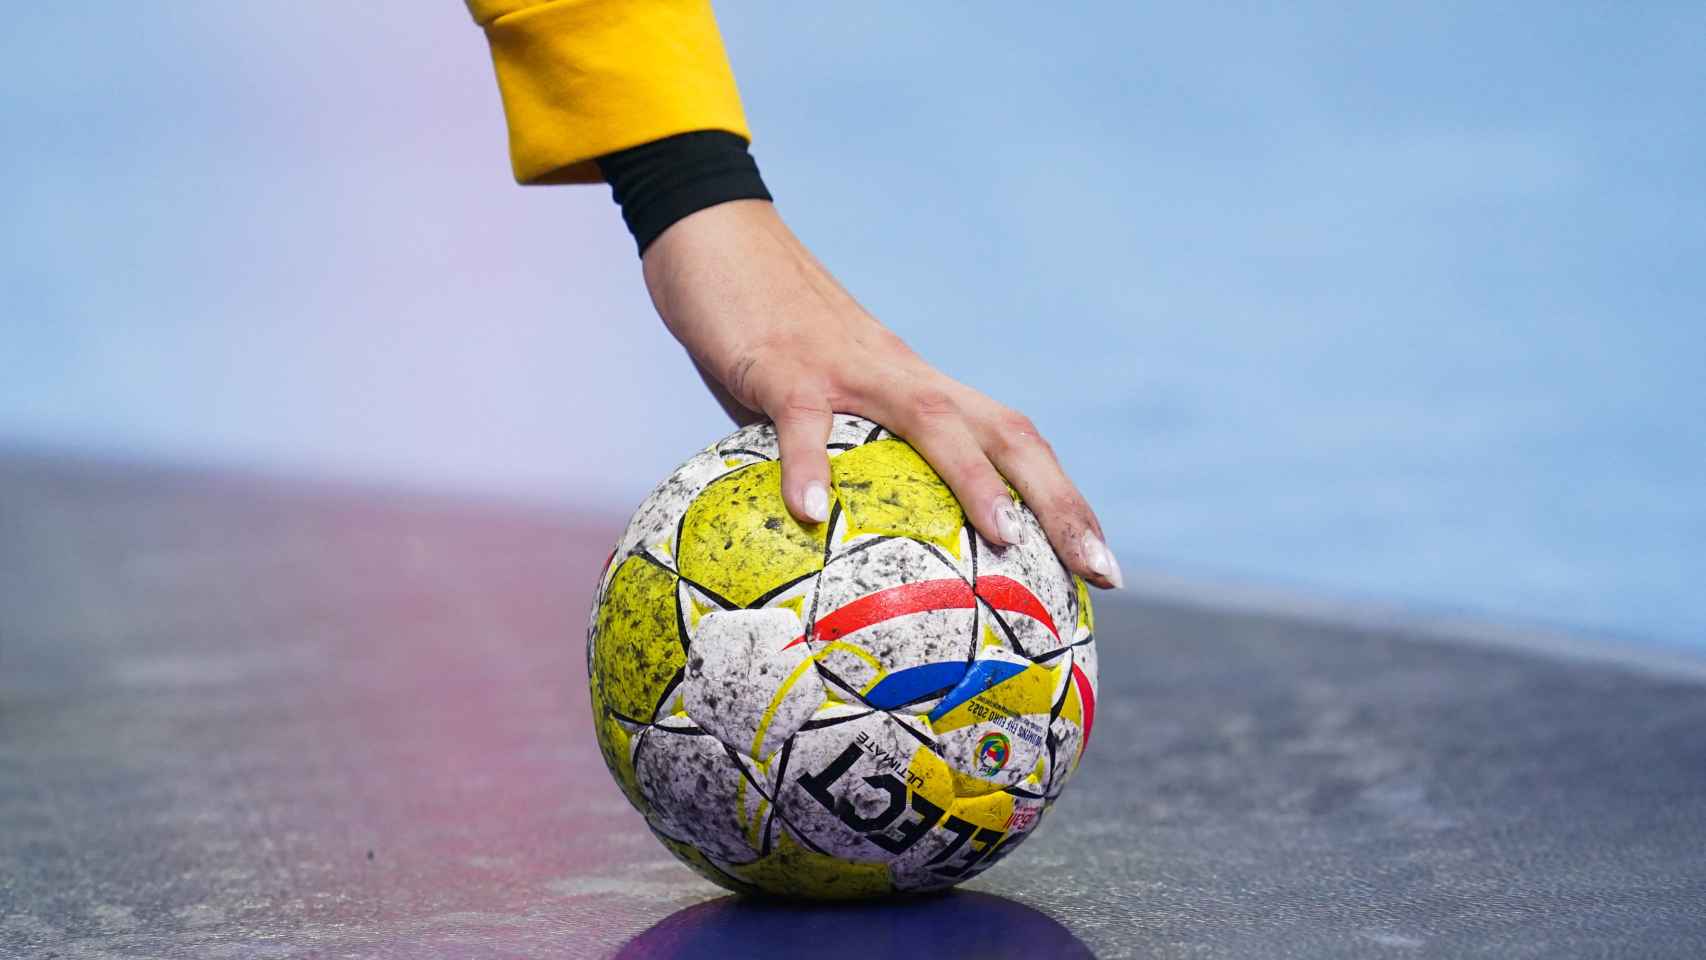 Una jugadora coge el balón del suelo durante un partido.